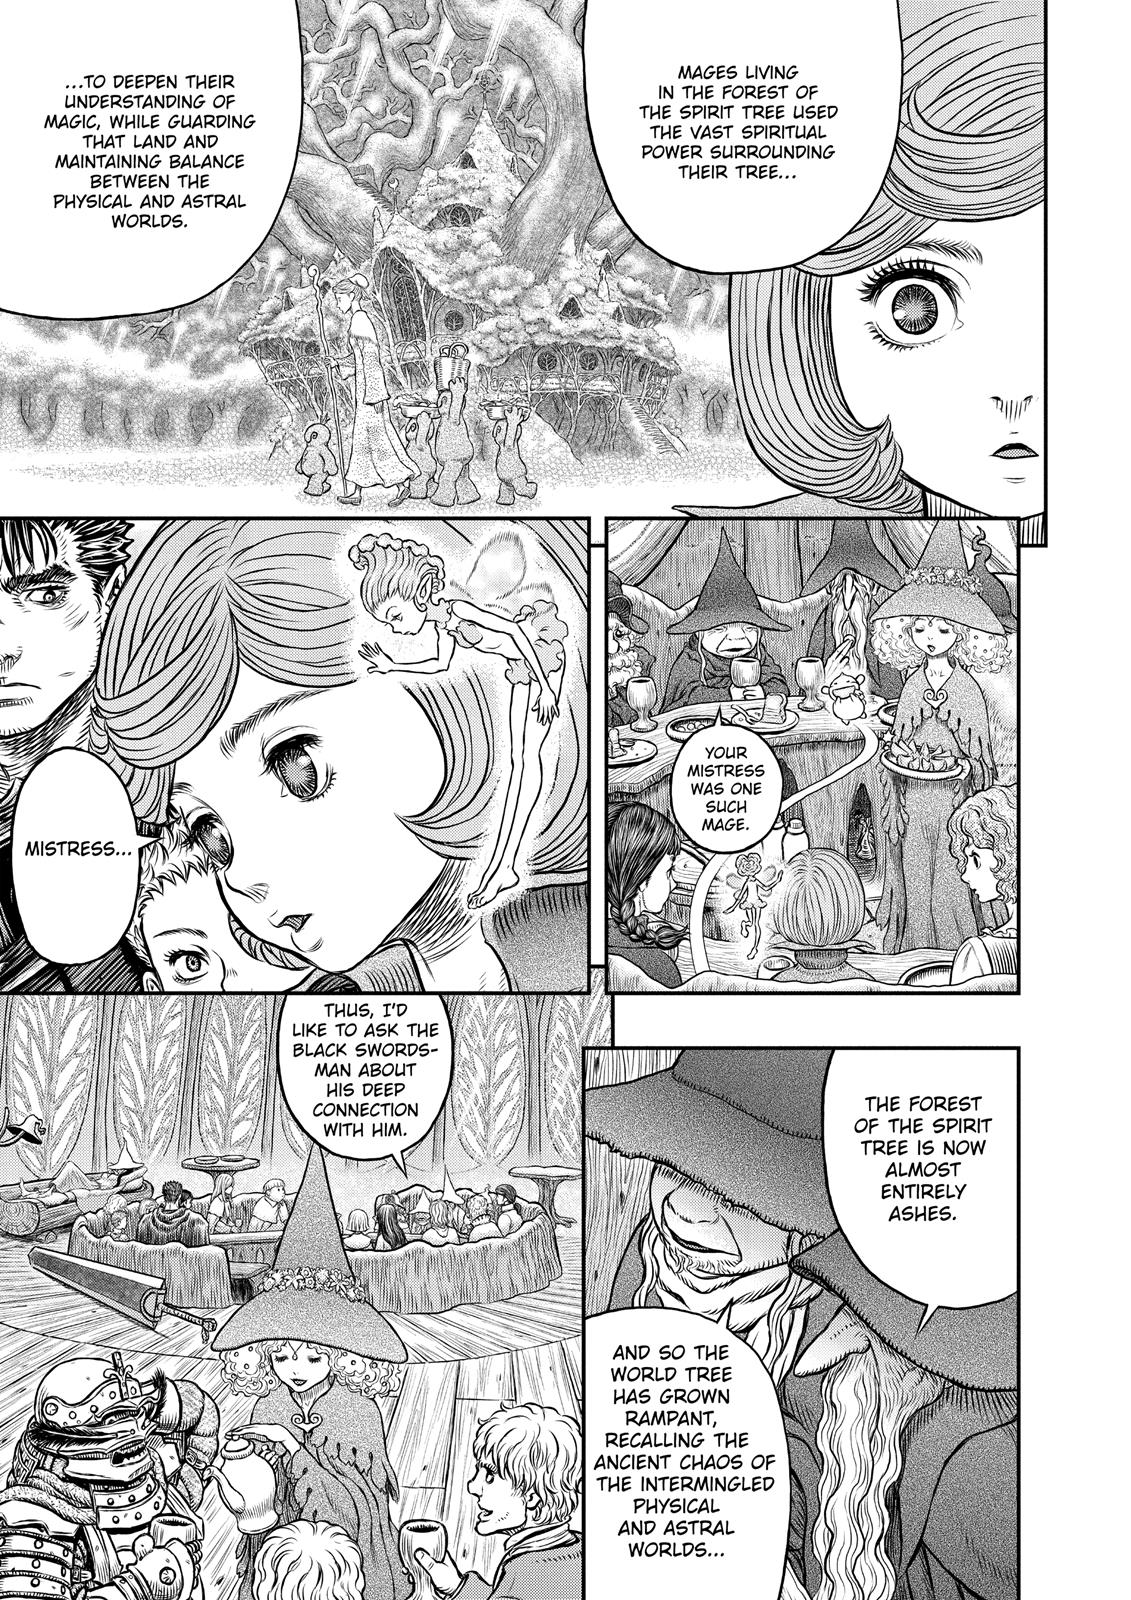 Berserk Manga Chapter 345 image 14